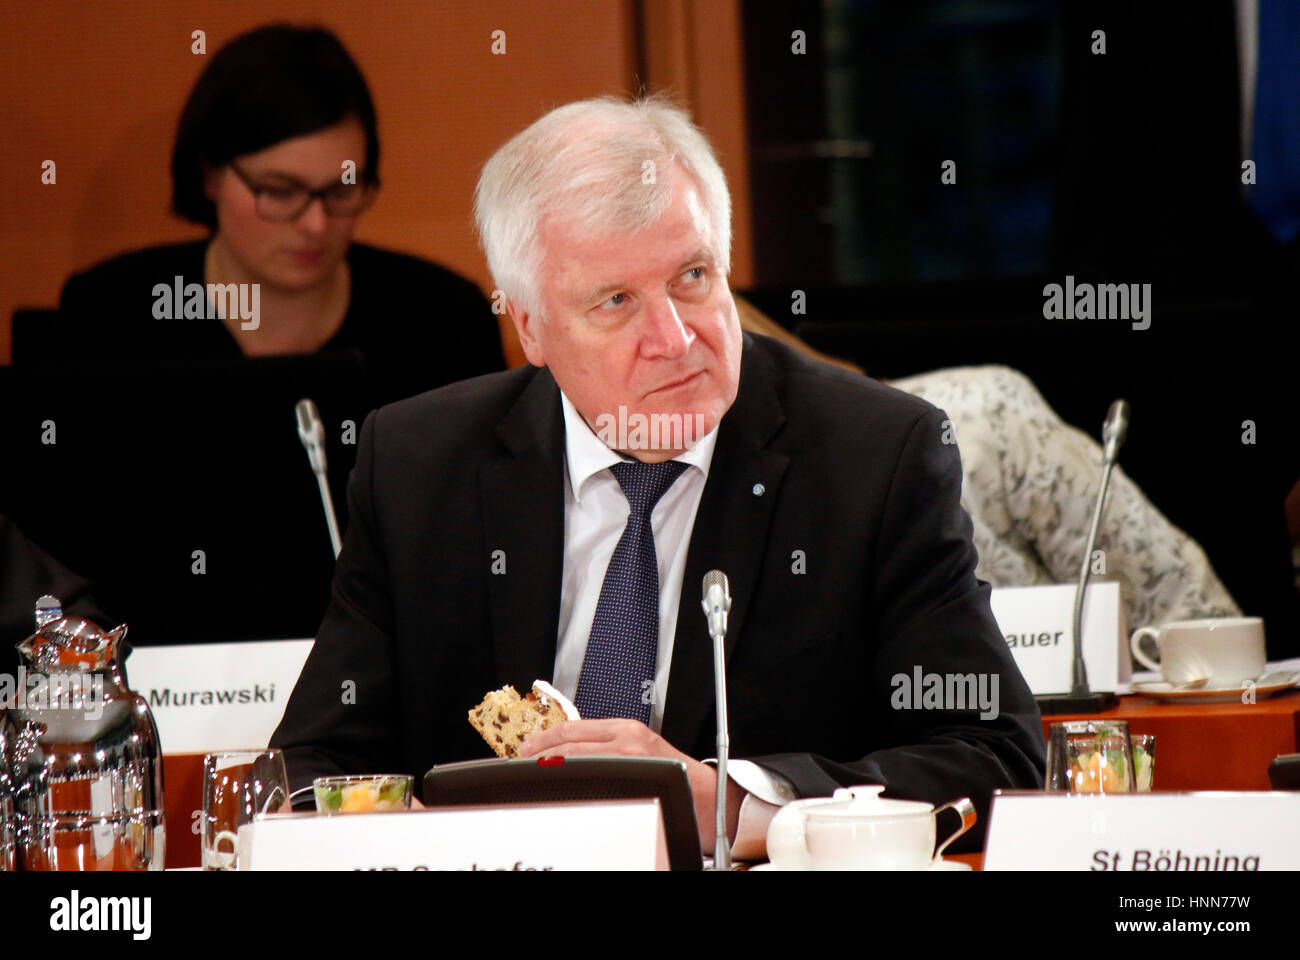 Horst Seehofer - Treffen der dt. Bundeskanzlerin mit den Ministerpraesidenten der Laender, Bundeskanzleramt, 8. Dezember 2016, Berlin. Stock Photo